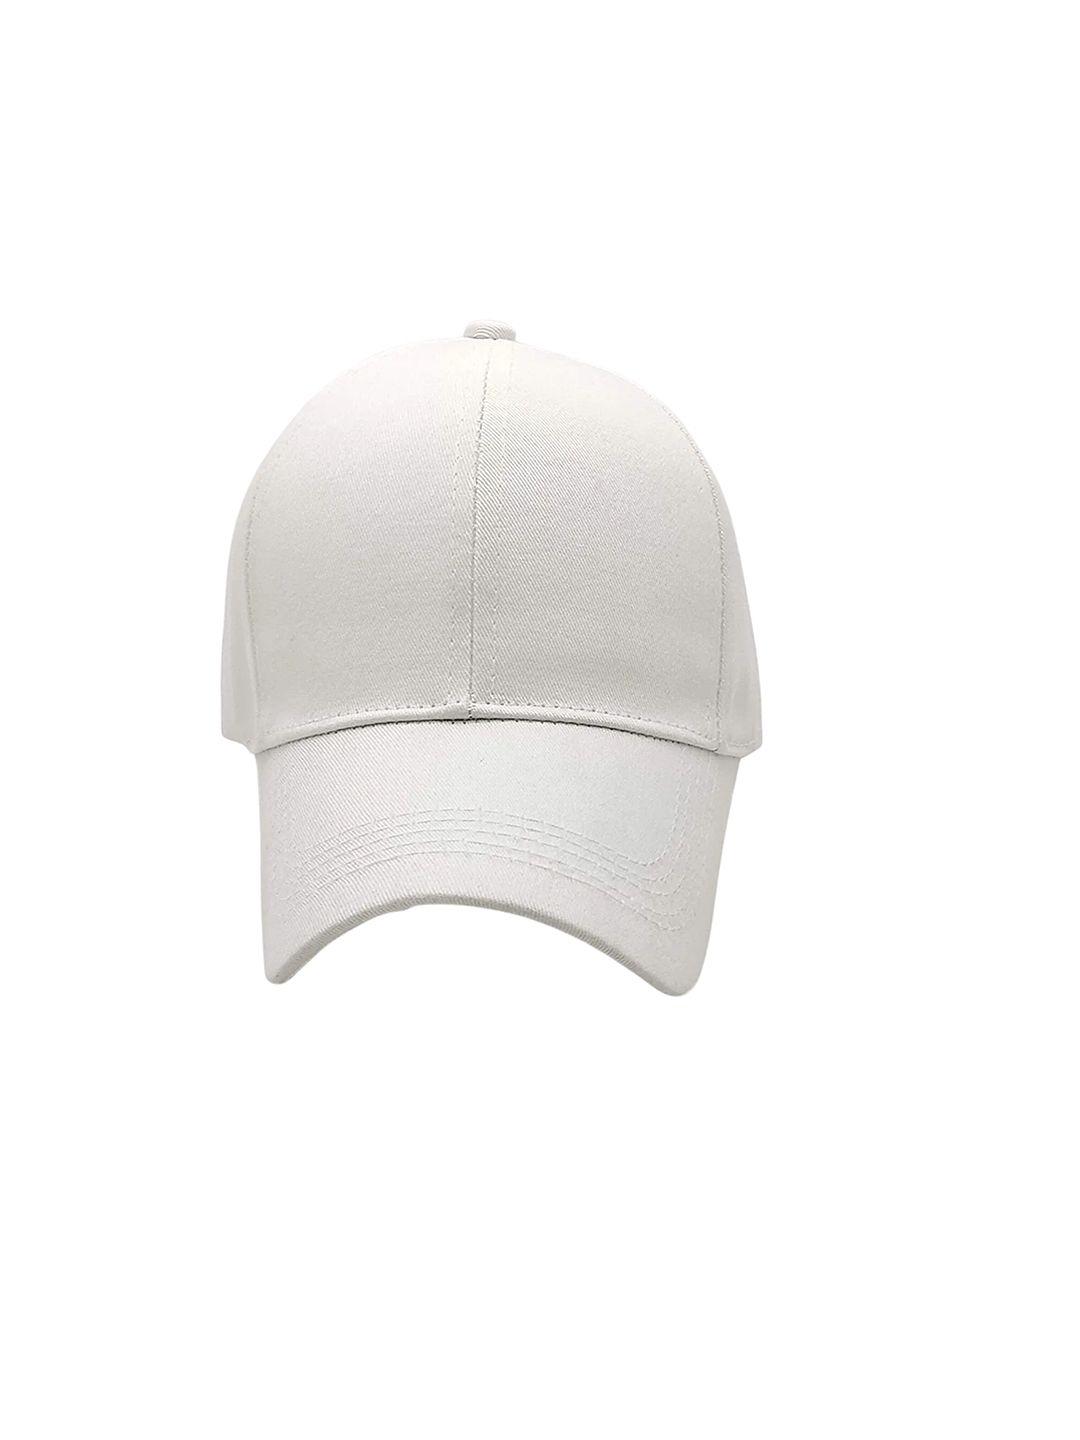 zacharias unisex white baseball cap